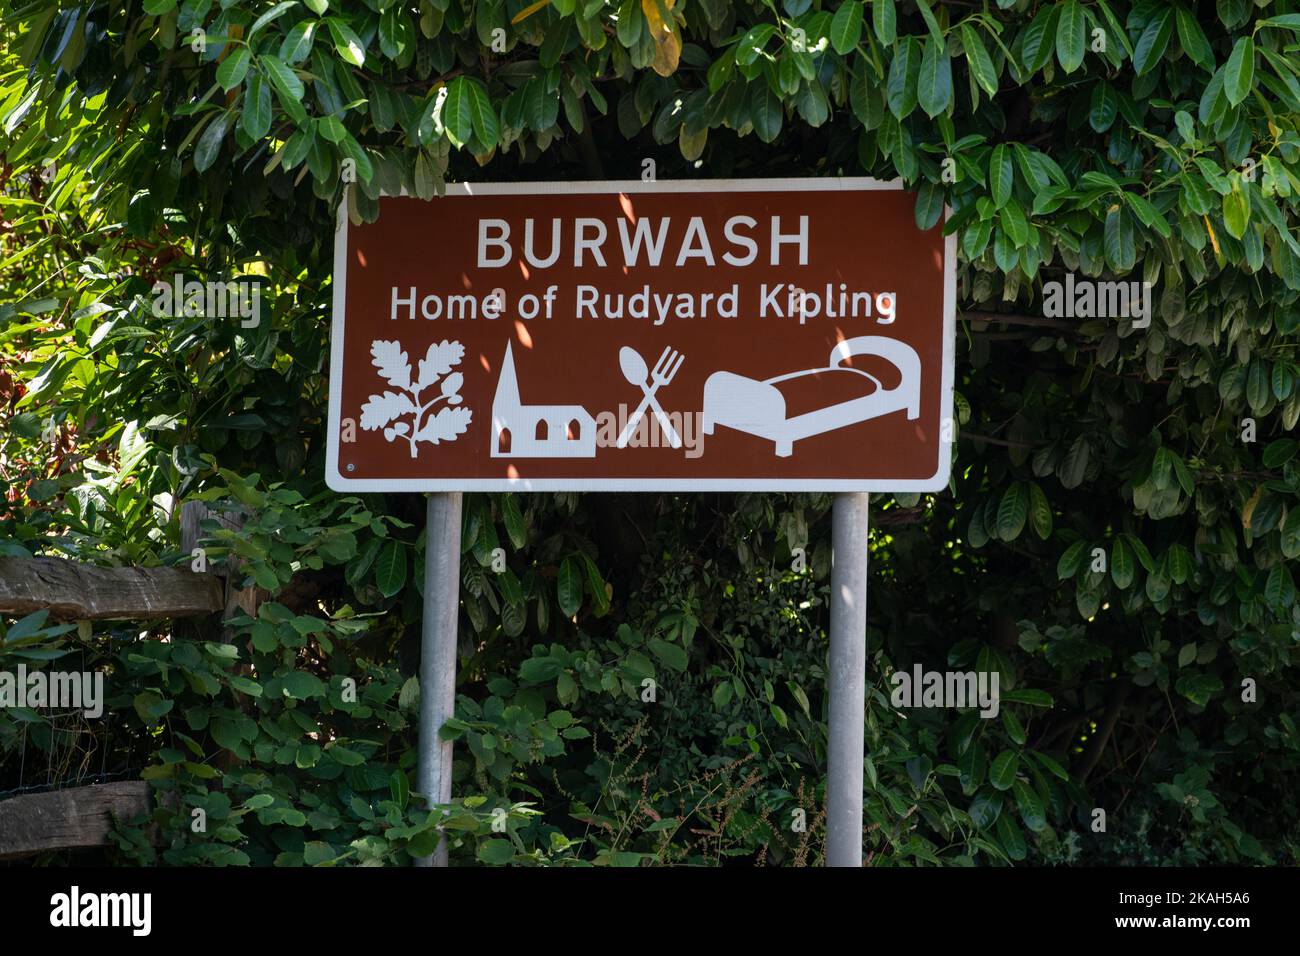 Burwash domicile de Rudyard Kipling panneau touristique marron, Burwash, East Sussex, Angleterre, Royaume-Uni Banque D'Images